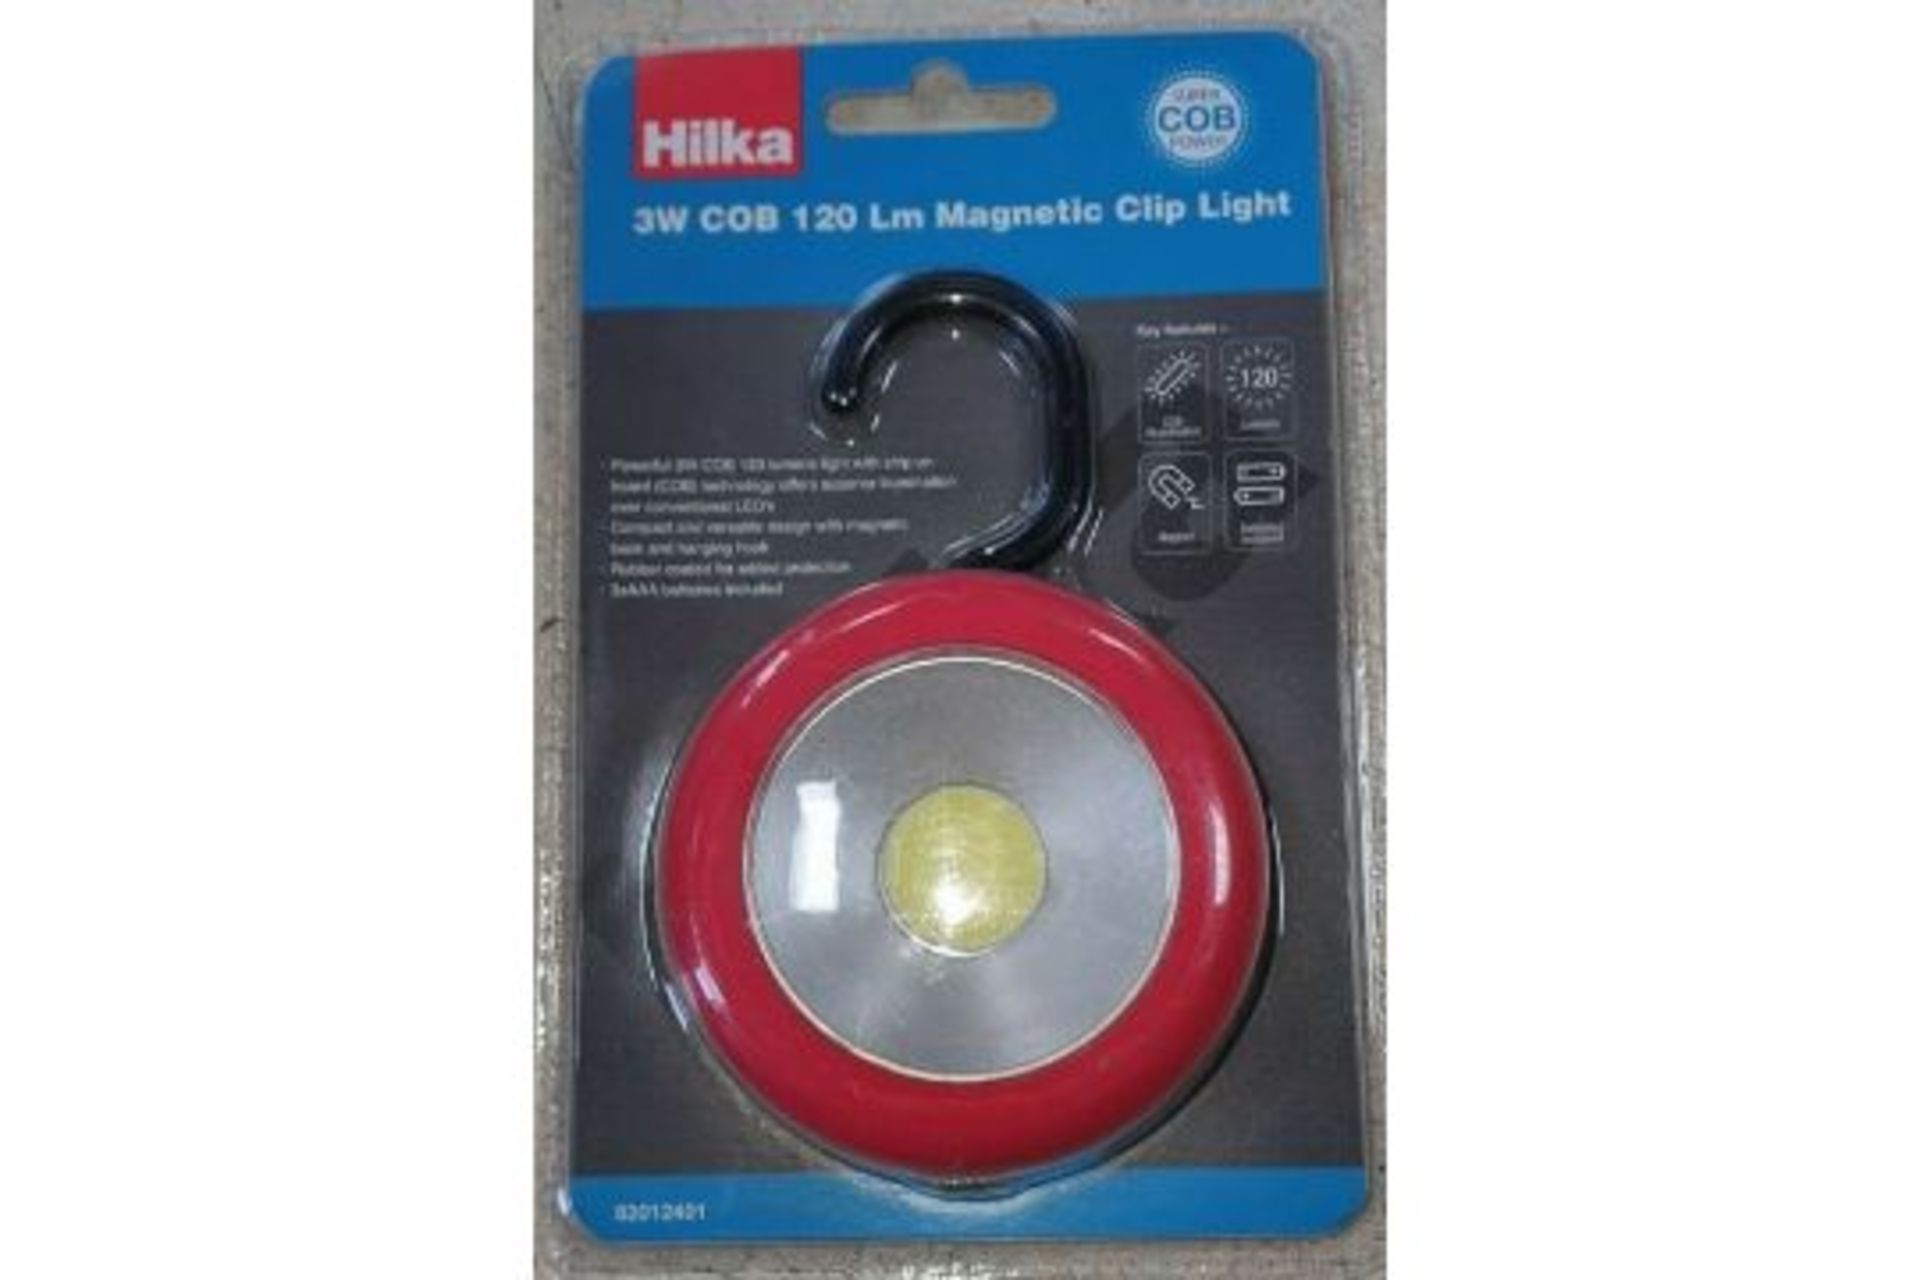 Hilka 3W Cob 120 Lm Magnetic Clip Light